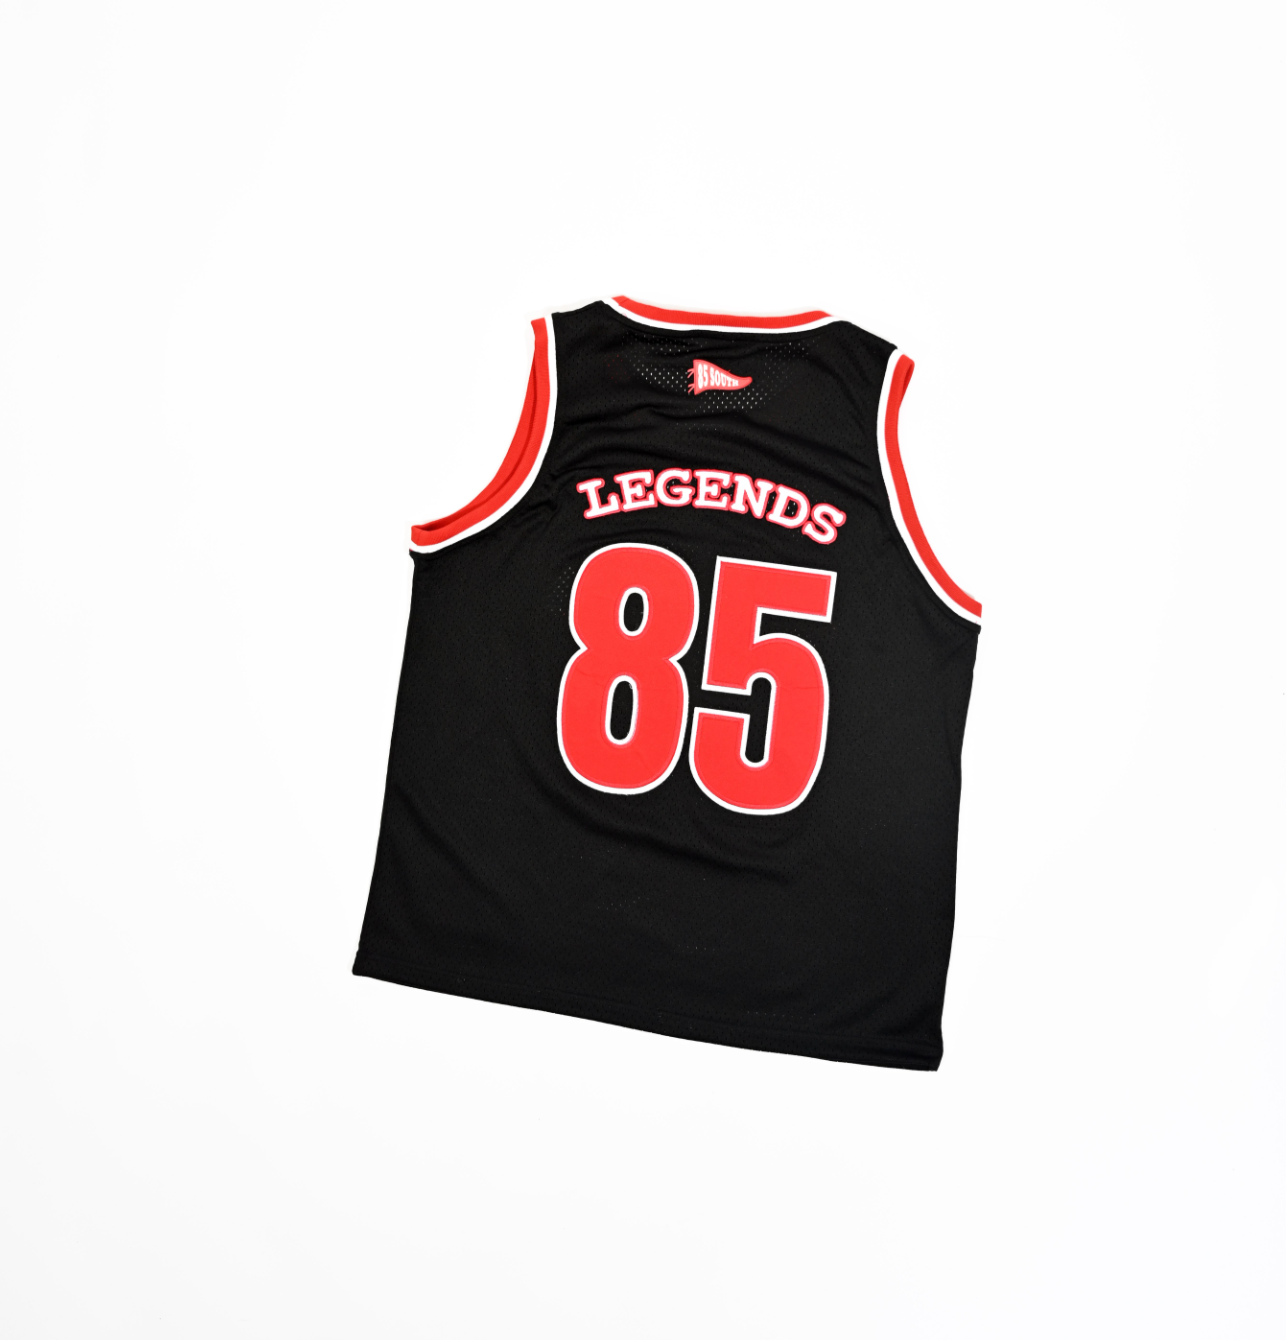 Ghetto Legends Basketball Jersey